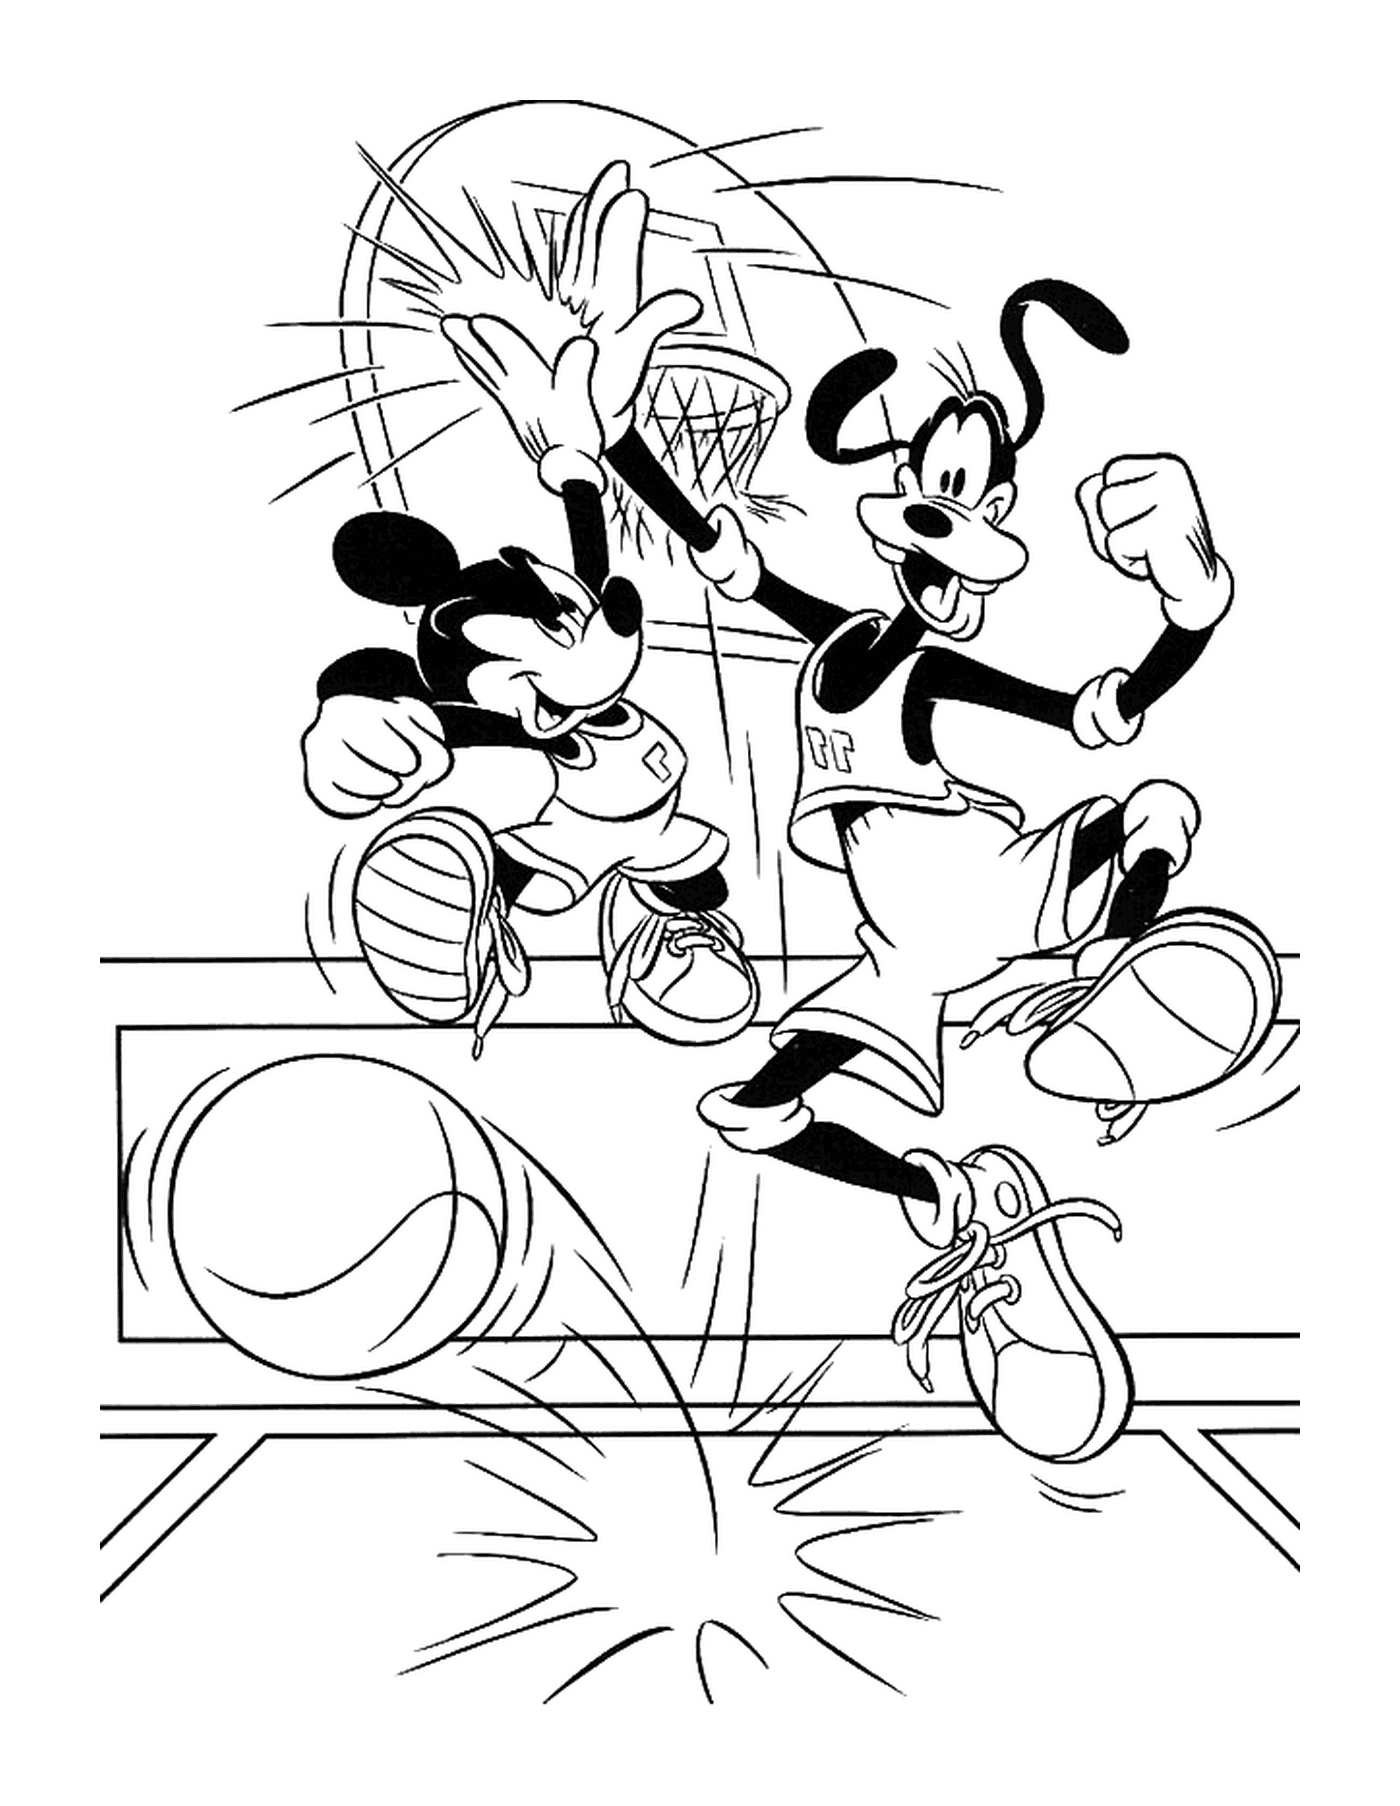  Dingo y Mickey juegan al baloncesto 